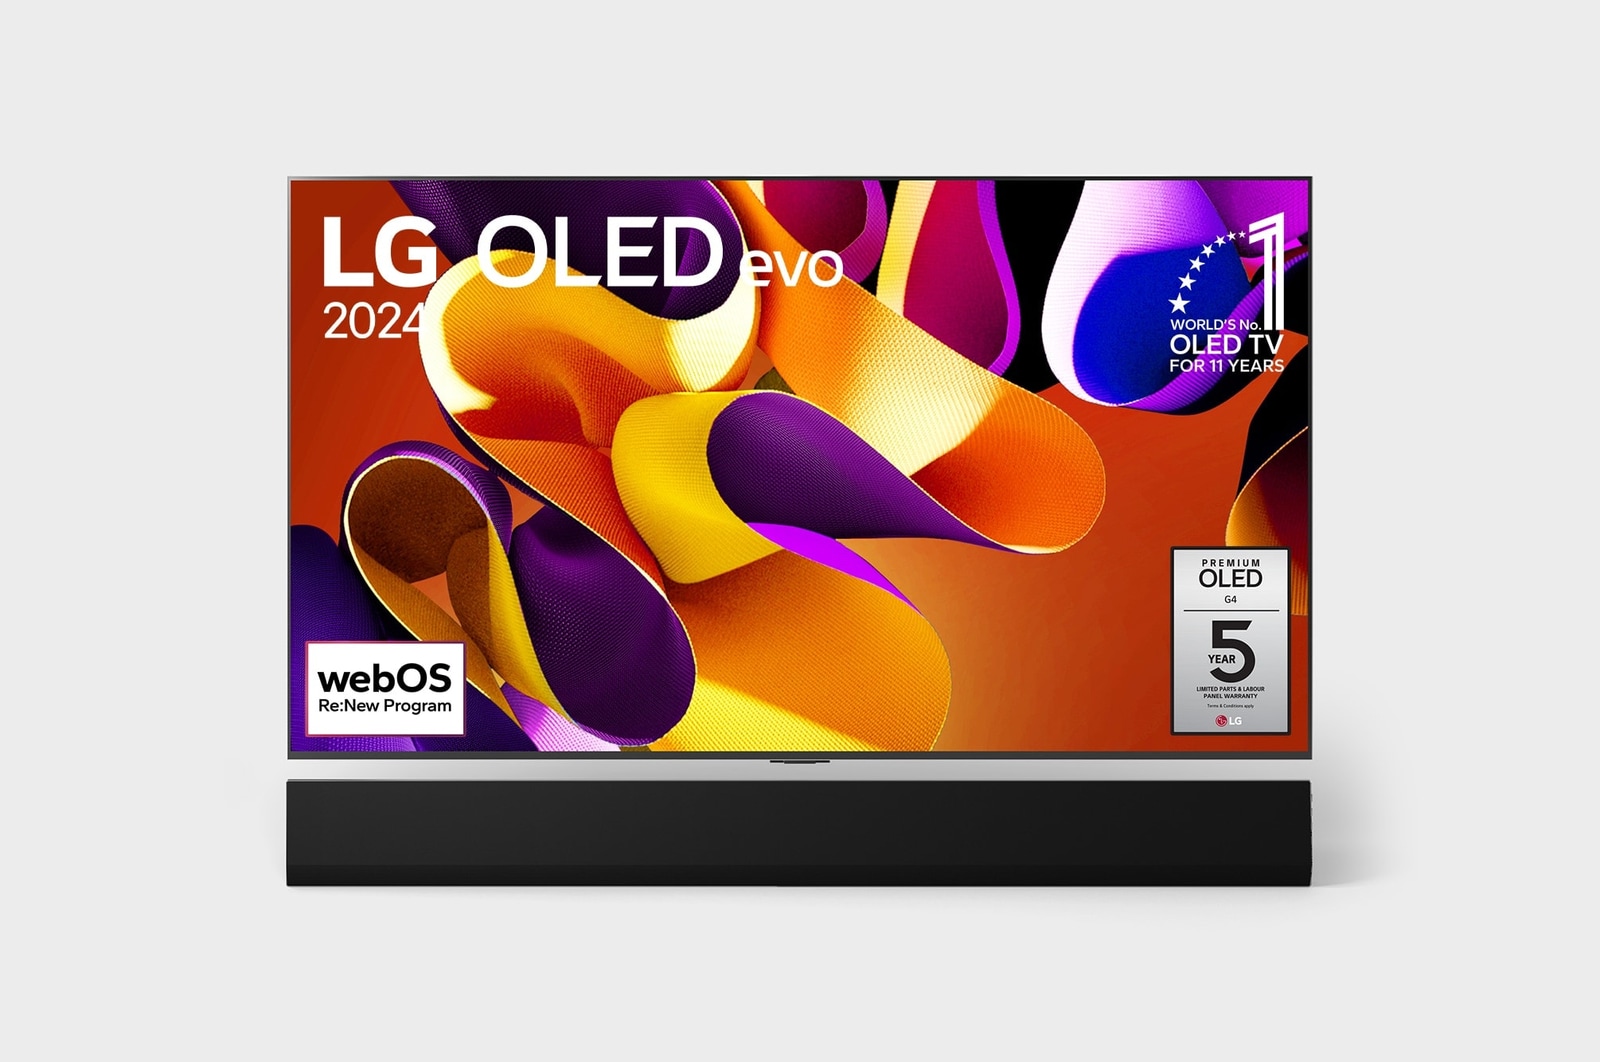 Vista frontal com a LG OLED evo TV, OLED G4, o emblema dos 11 anos da OLED número 1 do mundo e o logótipo da garantia do painel de 5 anos no ecrã, assim como a barra de som abaixo